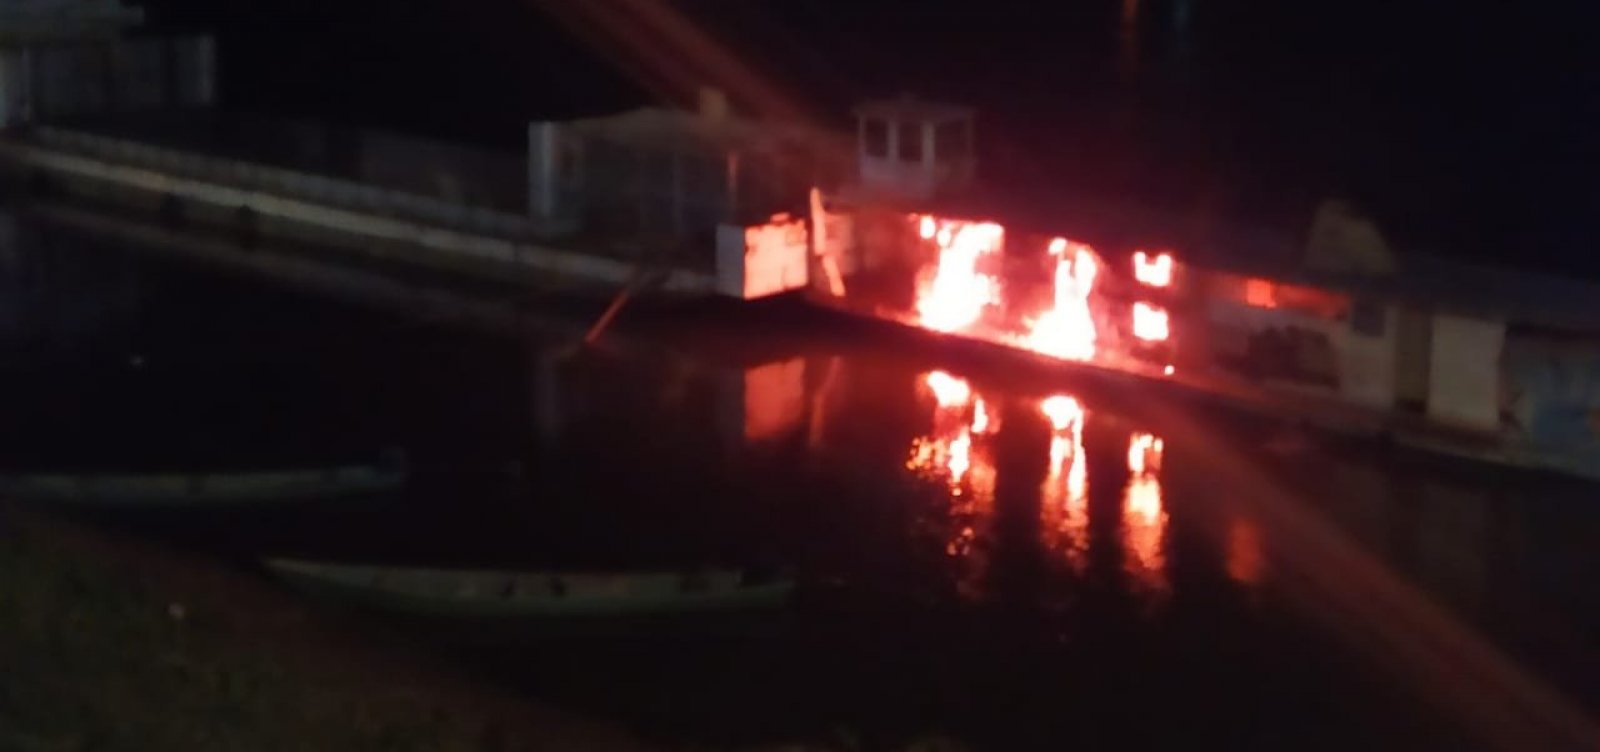 [Embarcação pega fogo em Ibotirama e policial fica ferido]